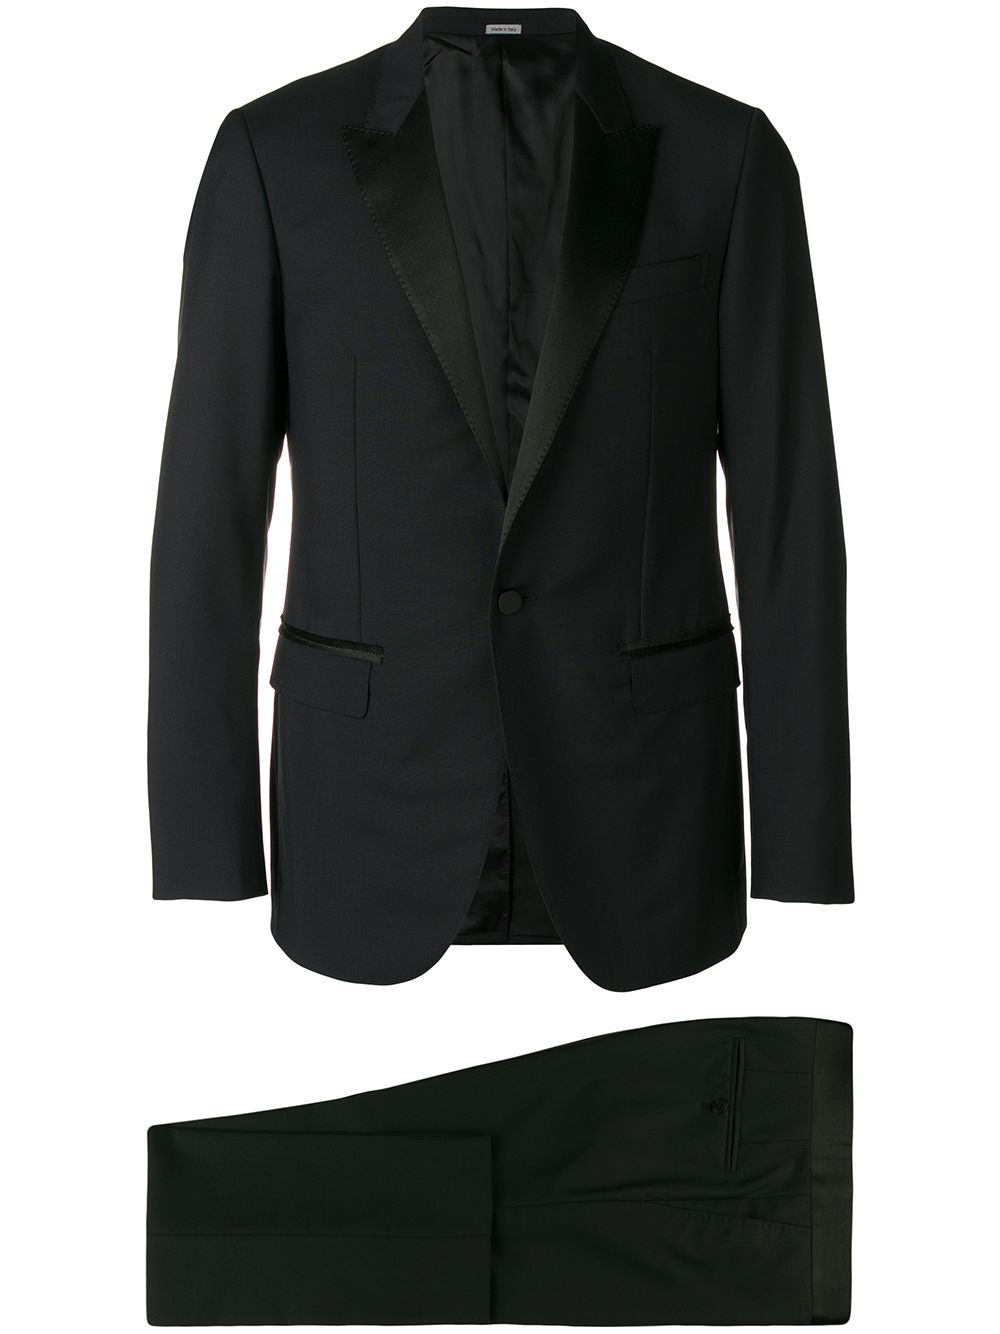 LANVIN formal two-piece suit